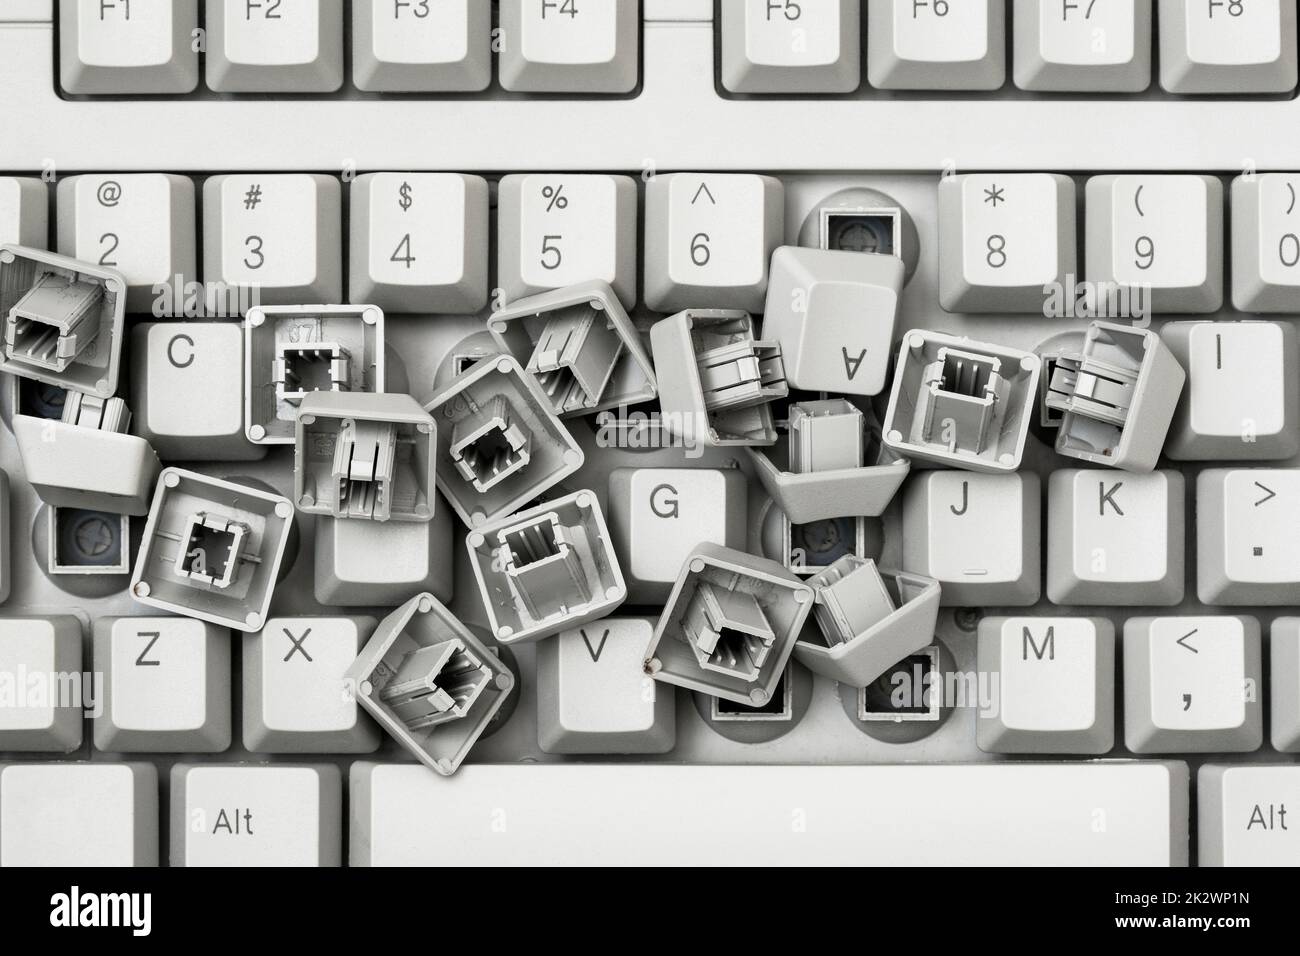 Haufen von entfernten Tasten von einer Tastatur, die auf der Tastatur liegt Stockfoto